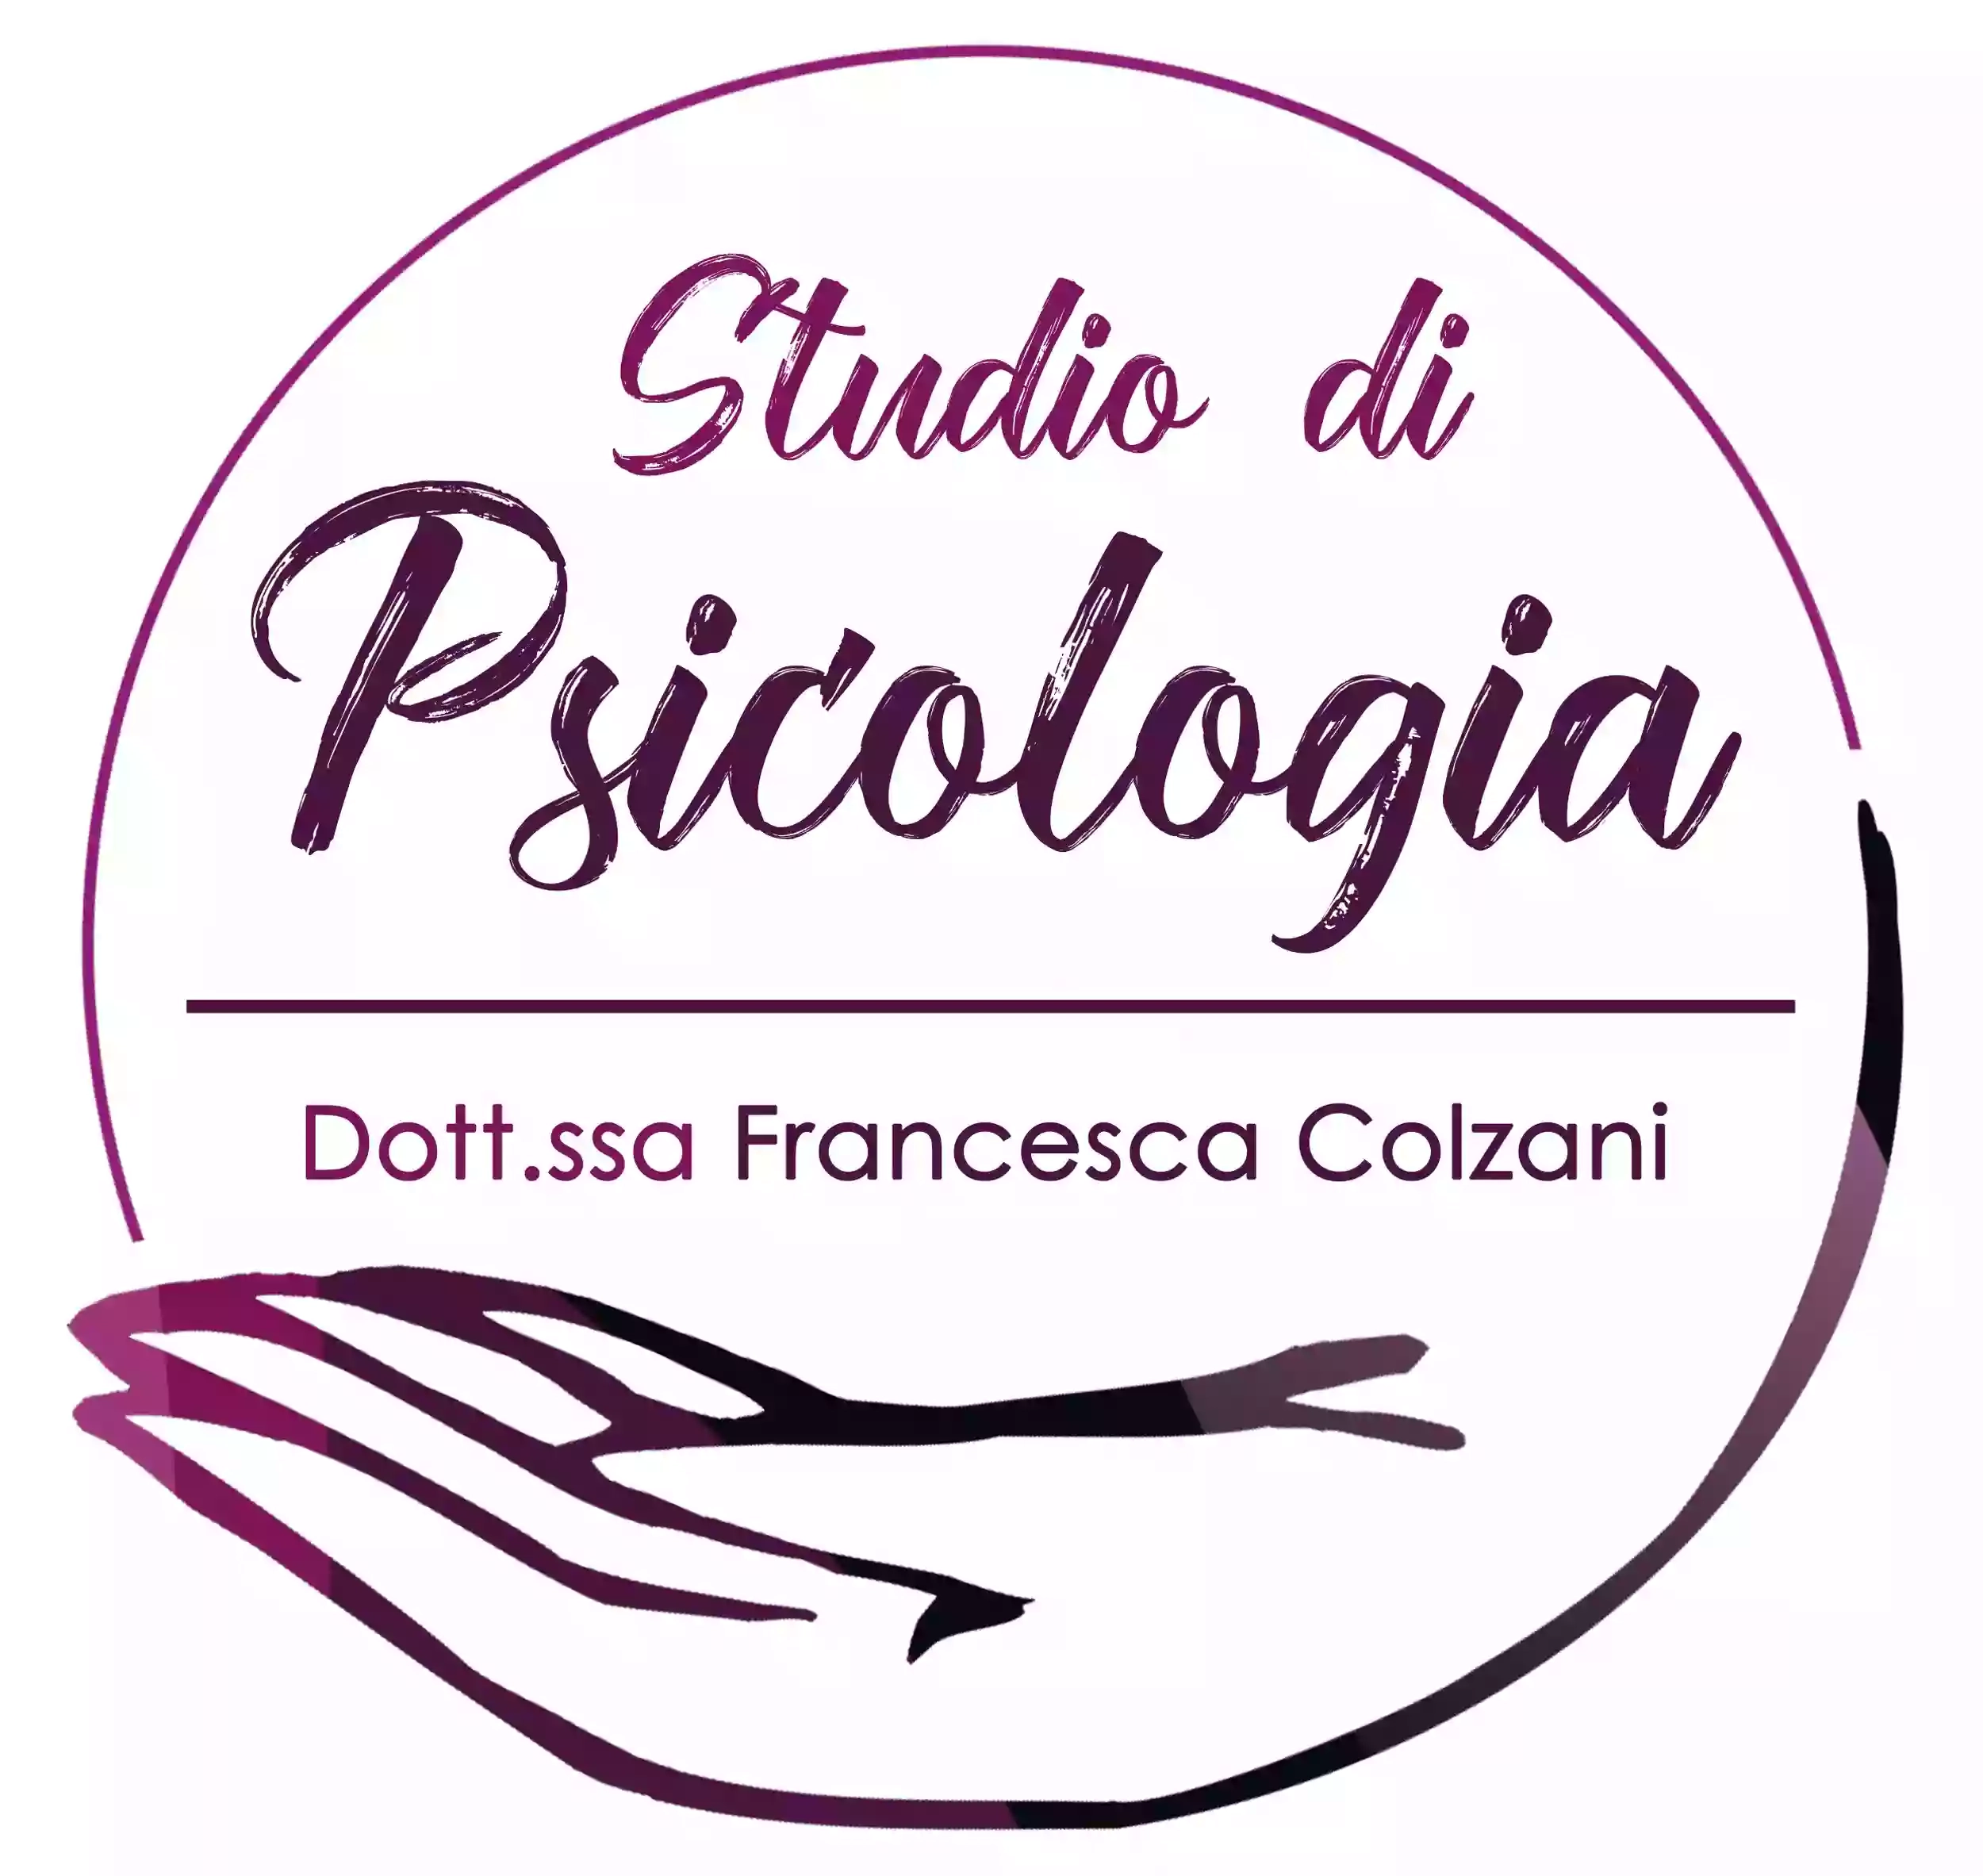 Psicologa - Dott.ssa Francesca Colzani